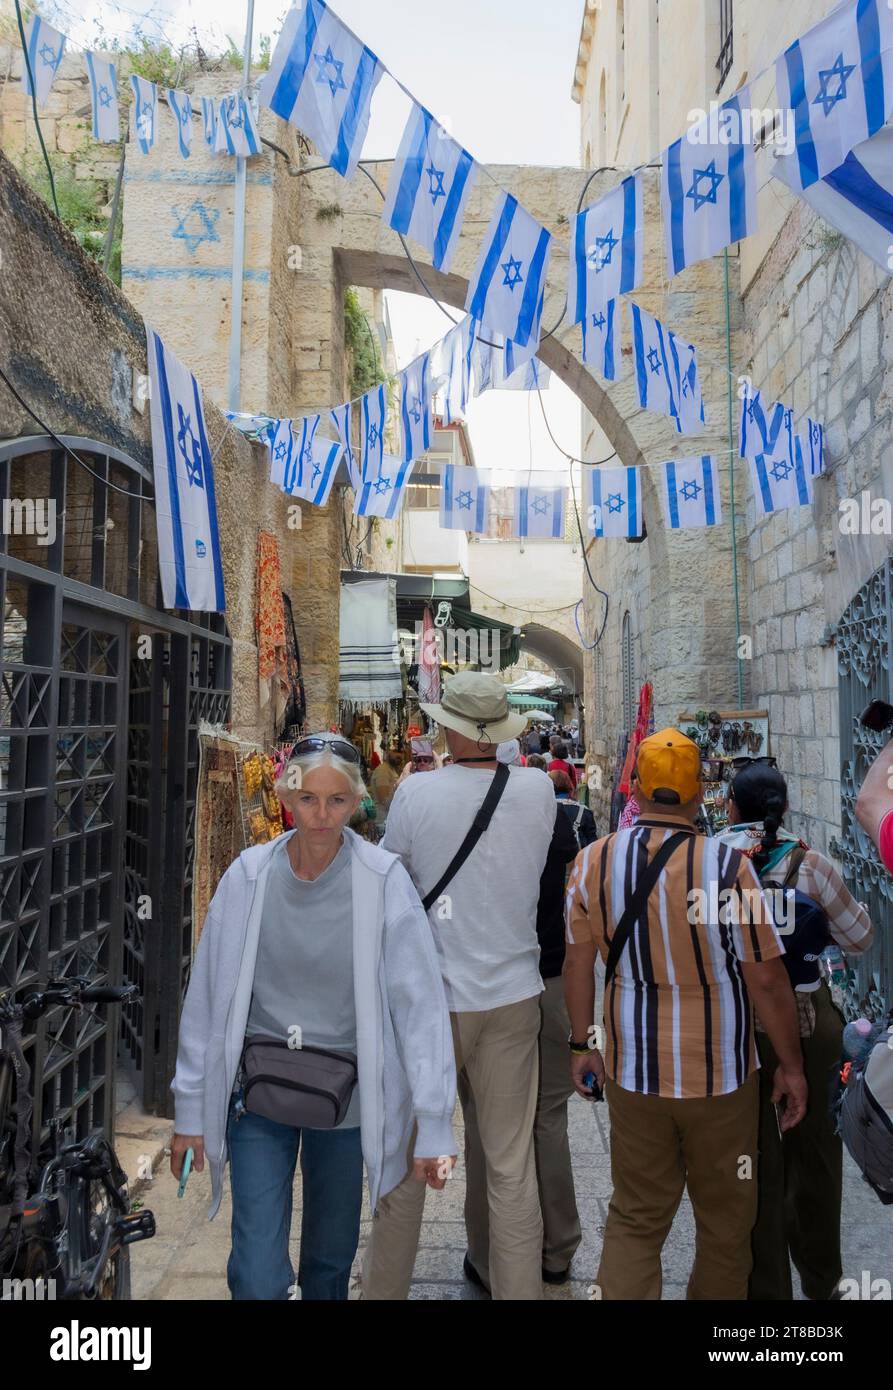 Touristen auf der Via Dolorosa, Altstadt von Jerusalem, Israel. Er stellt den Weg dar, den Jesus, von den römischen Soldaten gezwungen, auf dem Weg zu seinem C eingeschlagen hat Stockfoto